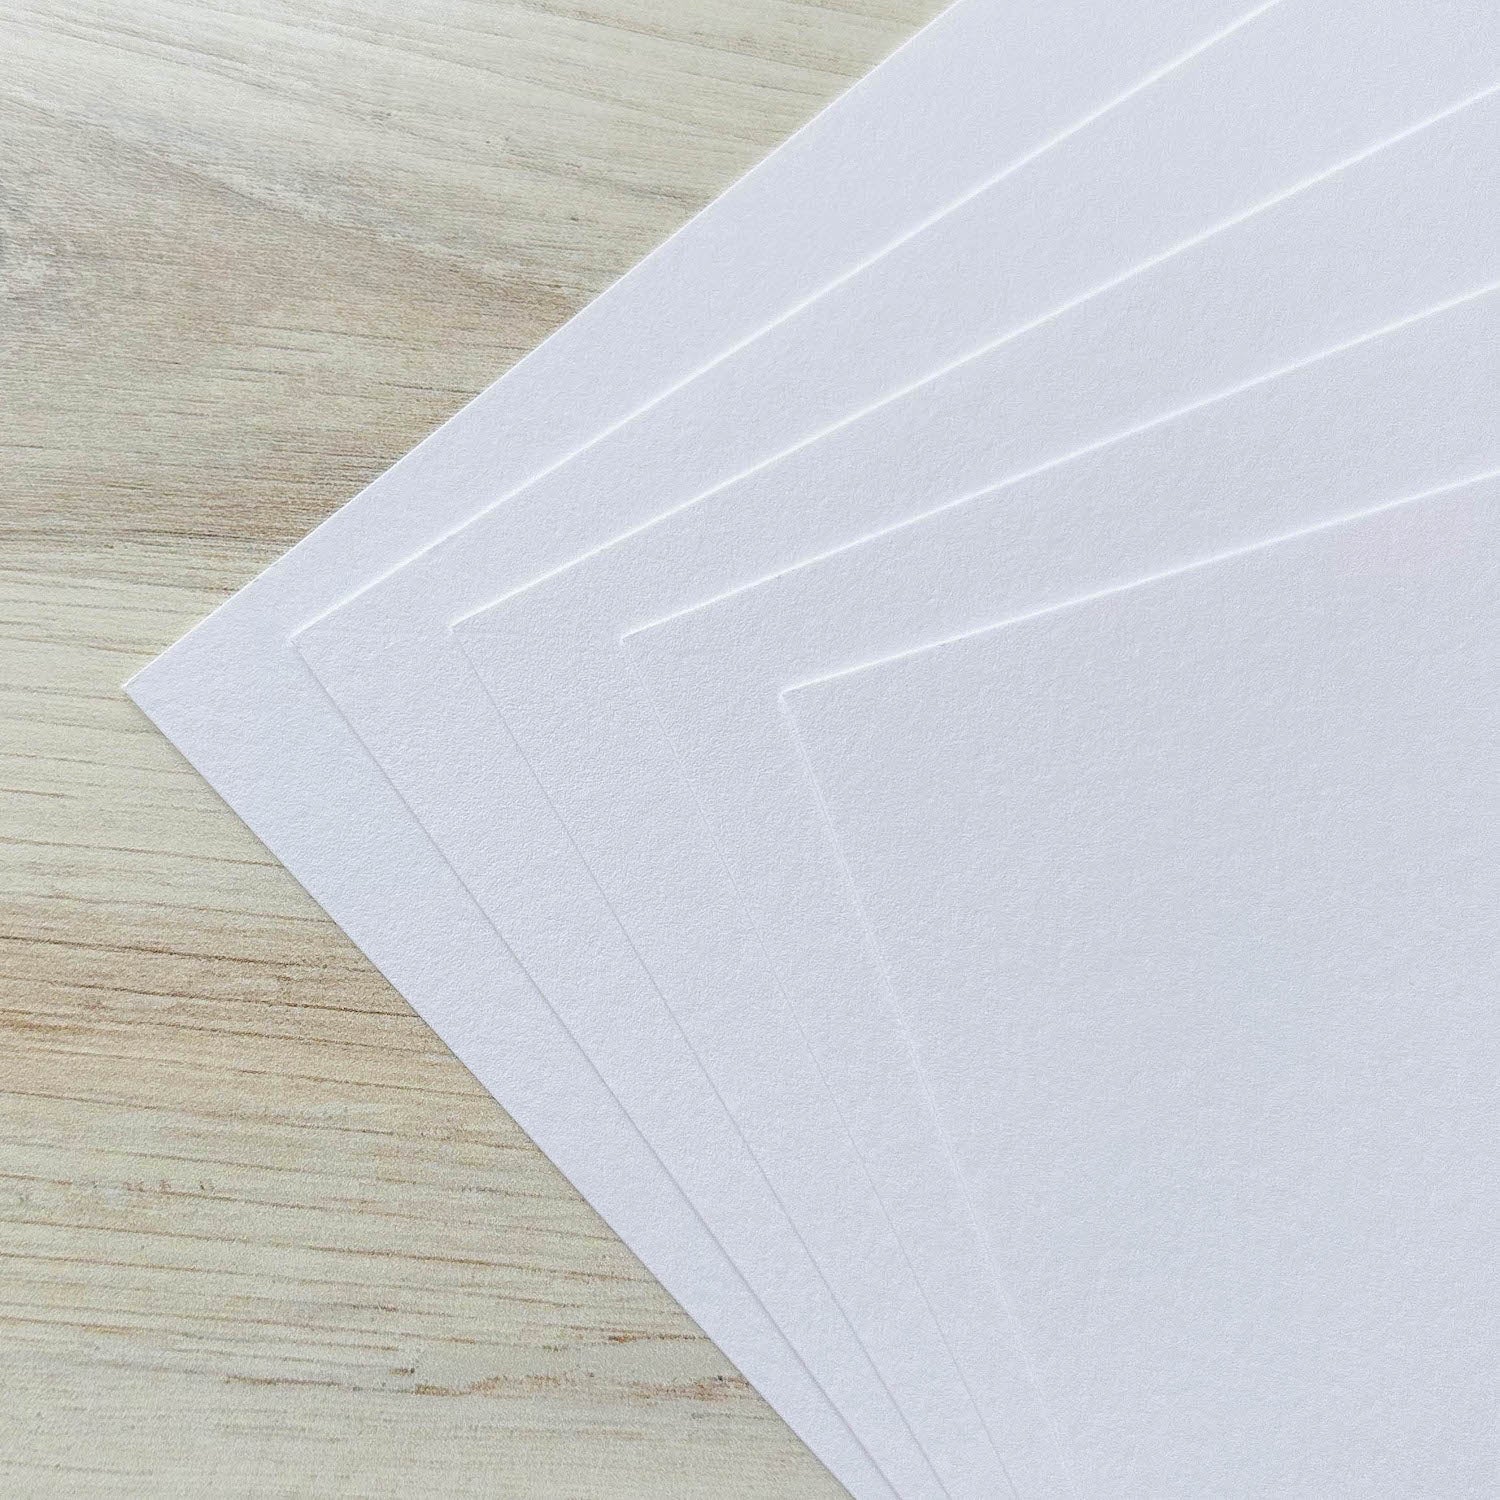 Fluorescent White Lettra Letterpress paper